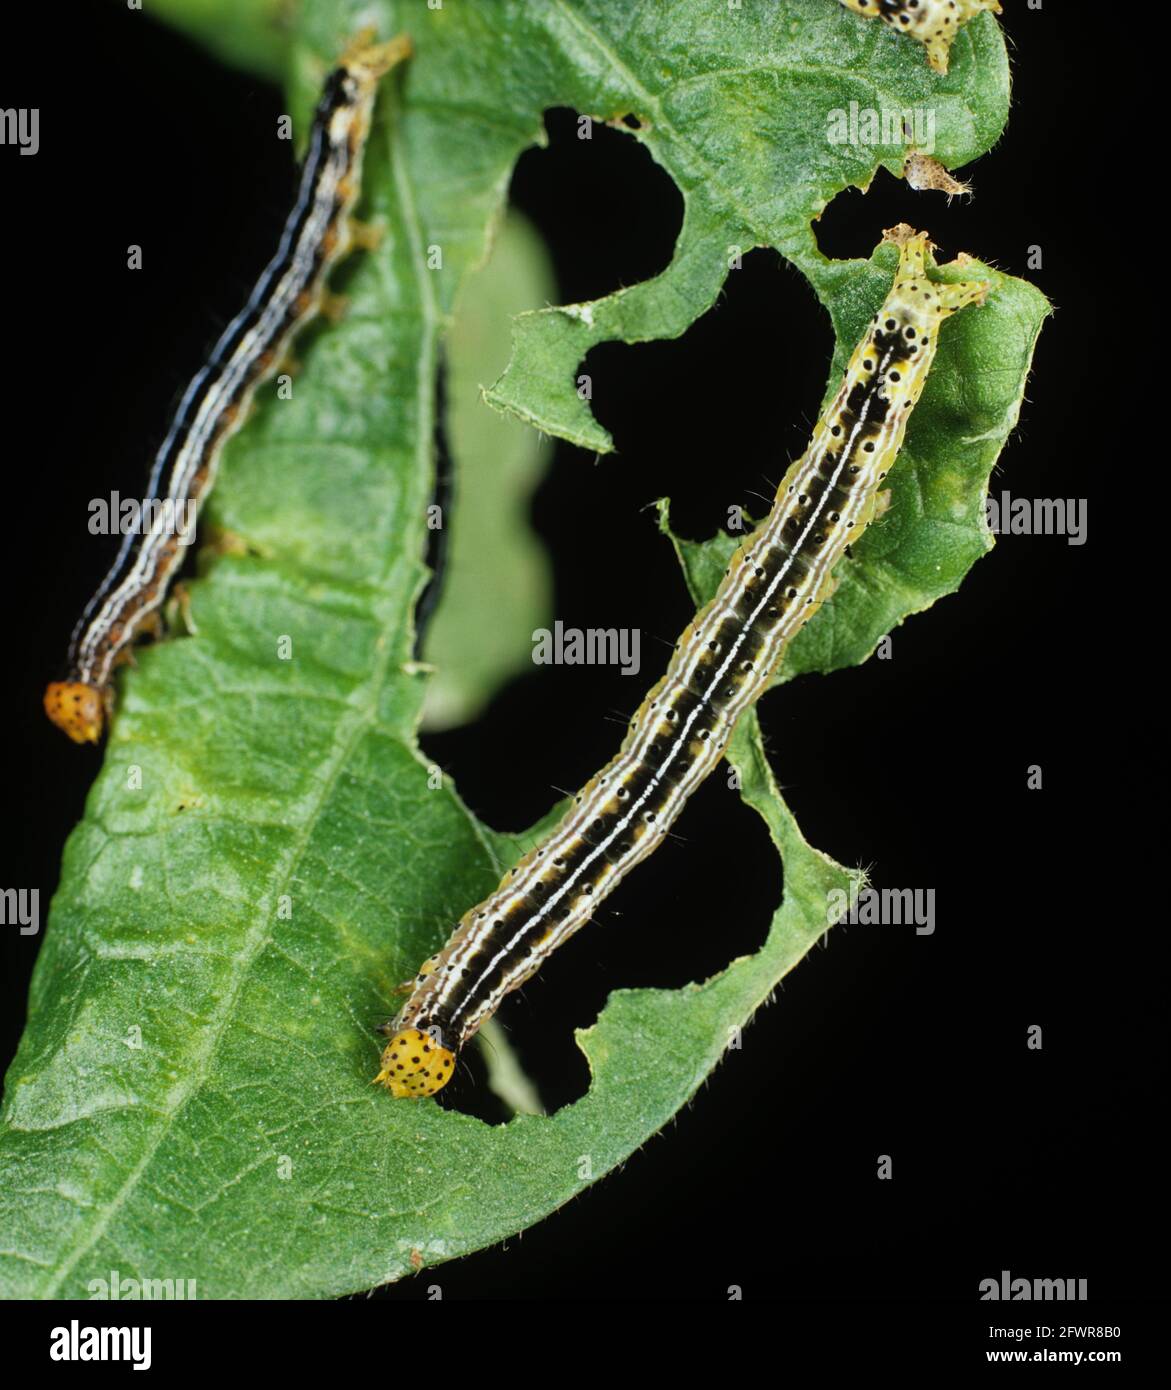 Cotton leafworm (Alabama argillacea) caterpillars on a damaged cotton leaf Stock Photo